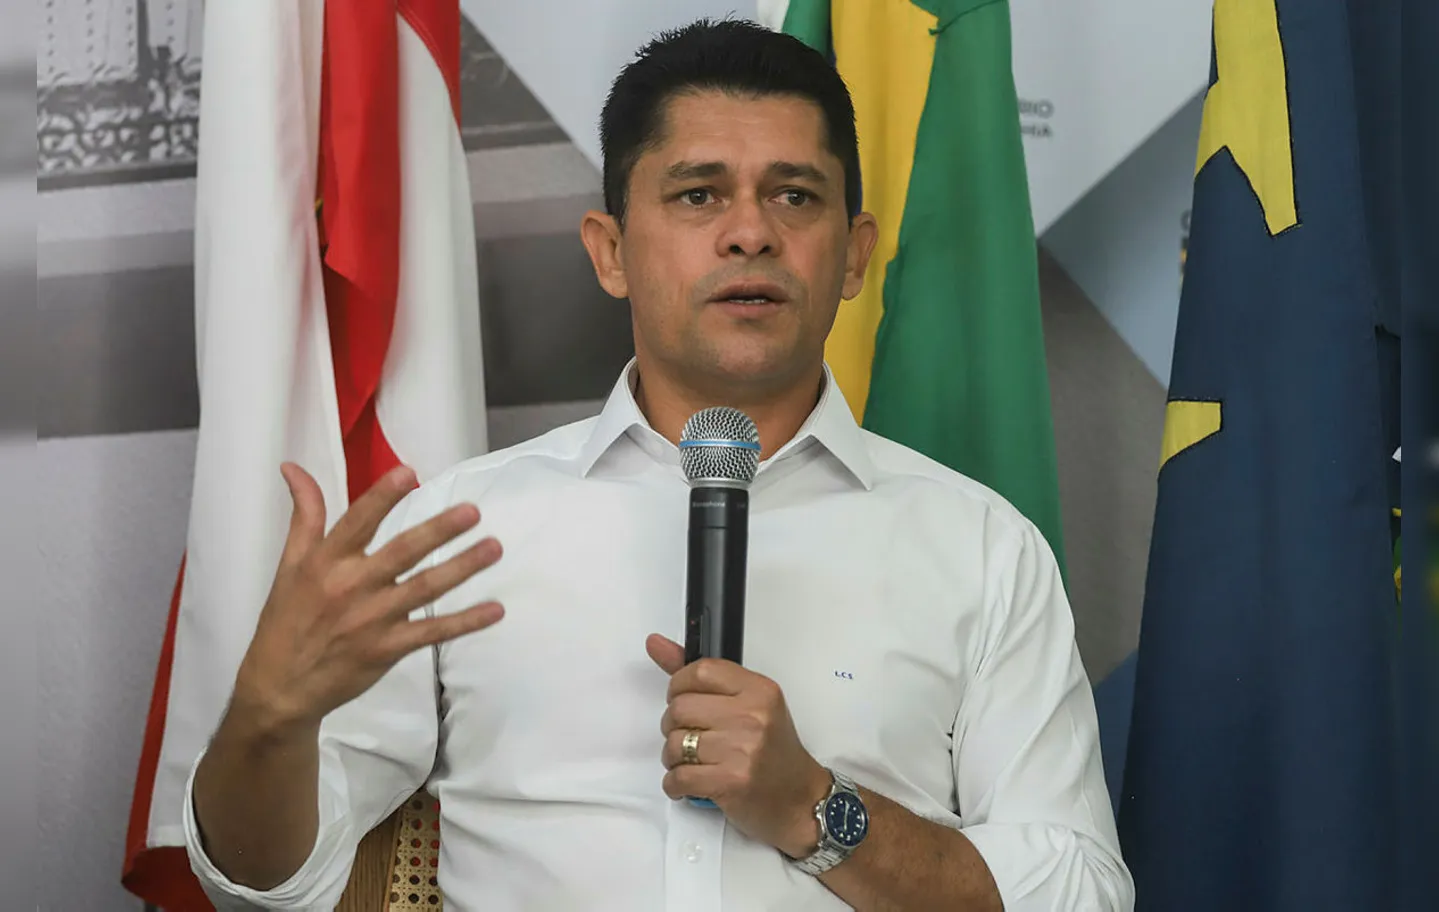 Luiz Carlos avaliou se aliança entre os partidos seria positivo ou negativo para as siglas em Salvador